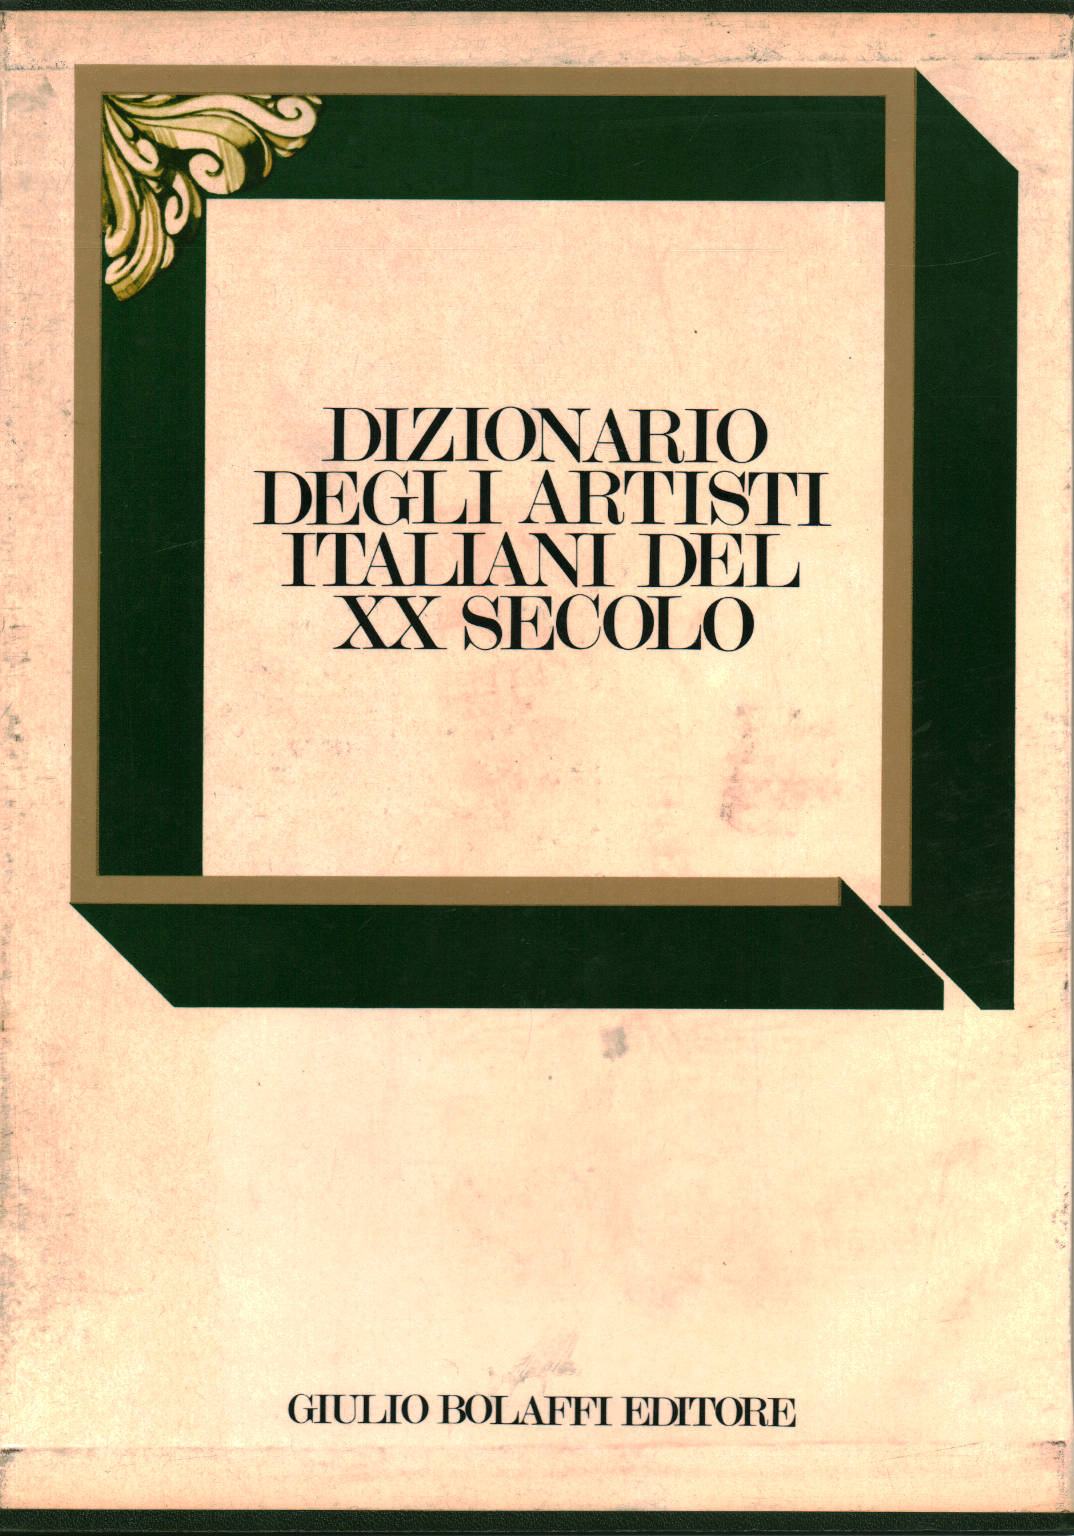 Dictionnaire des artistes italiens du xxe siècle (2, AA.VV.